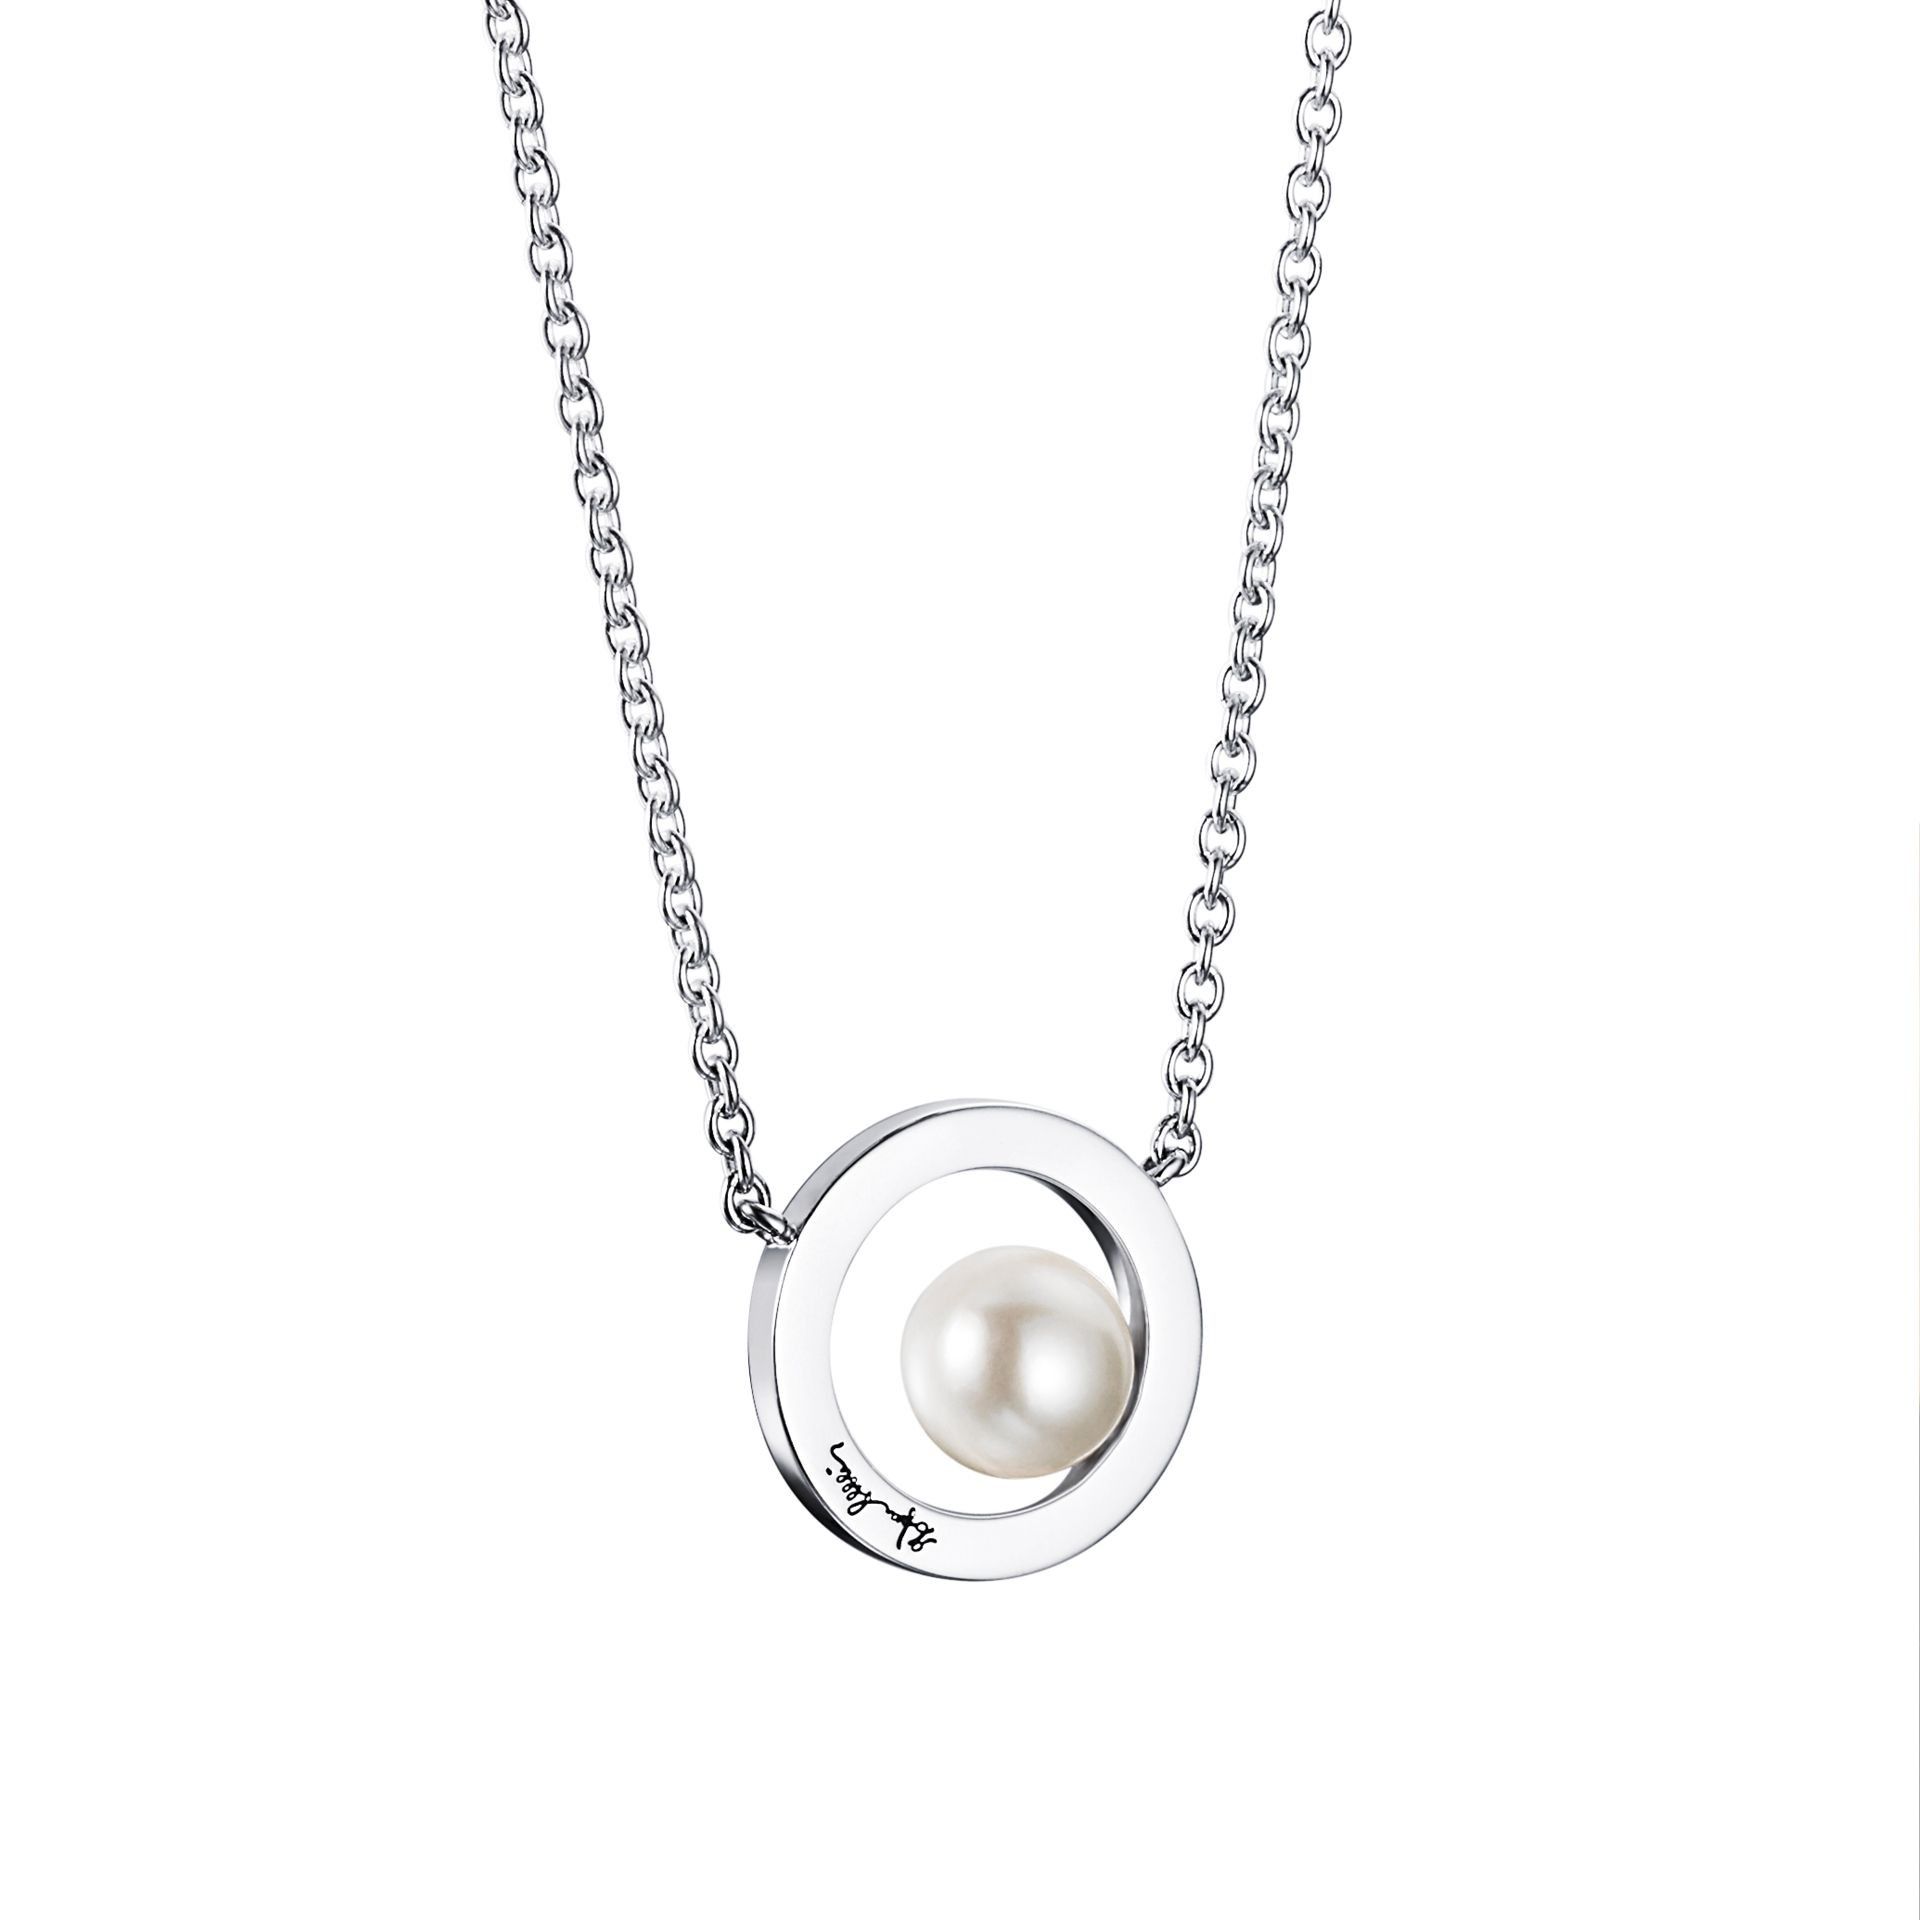 Efva Attling 60's Pearl Necklace 42/45 CM - SILVER